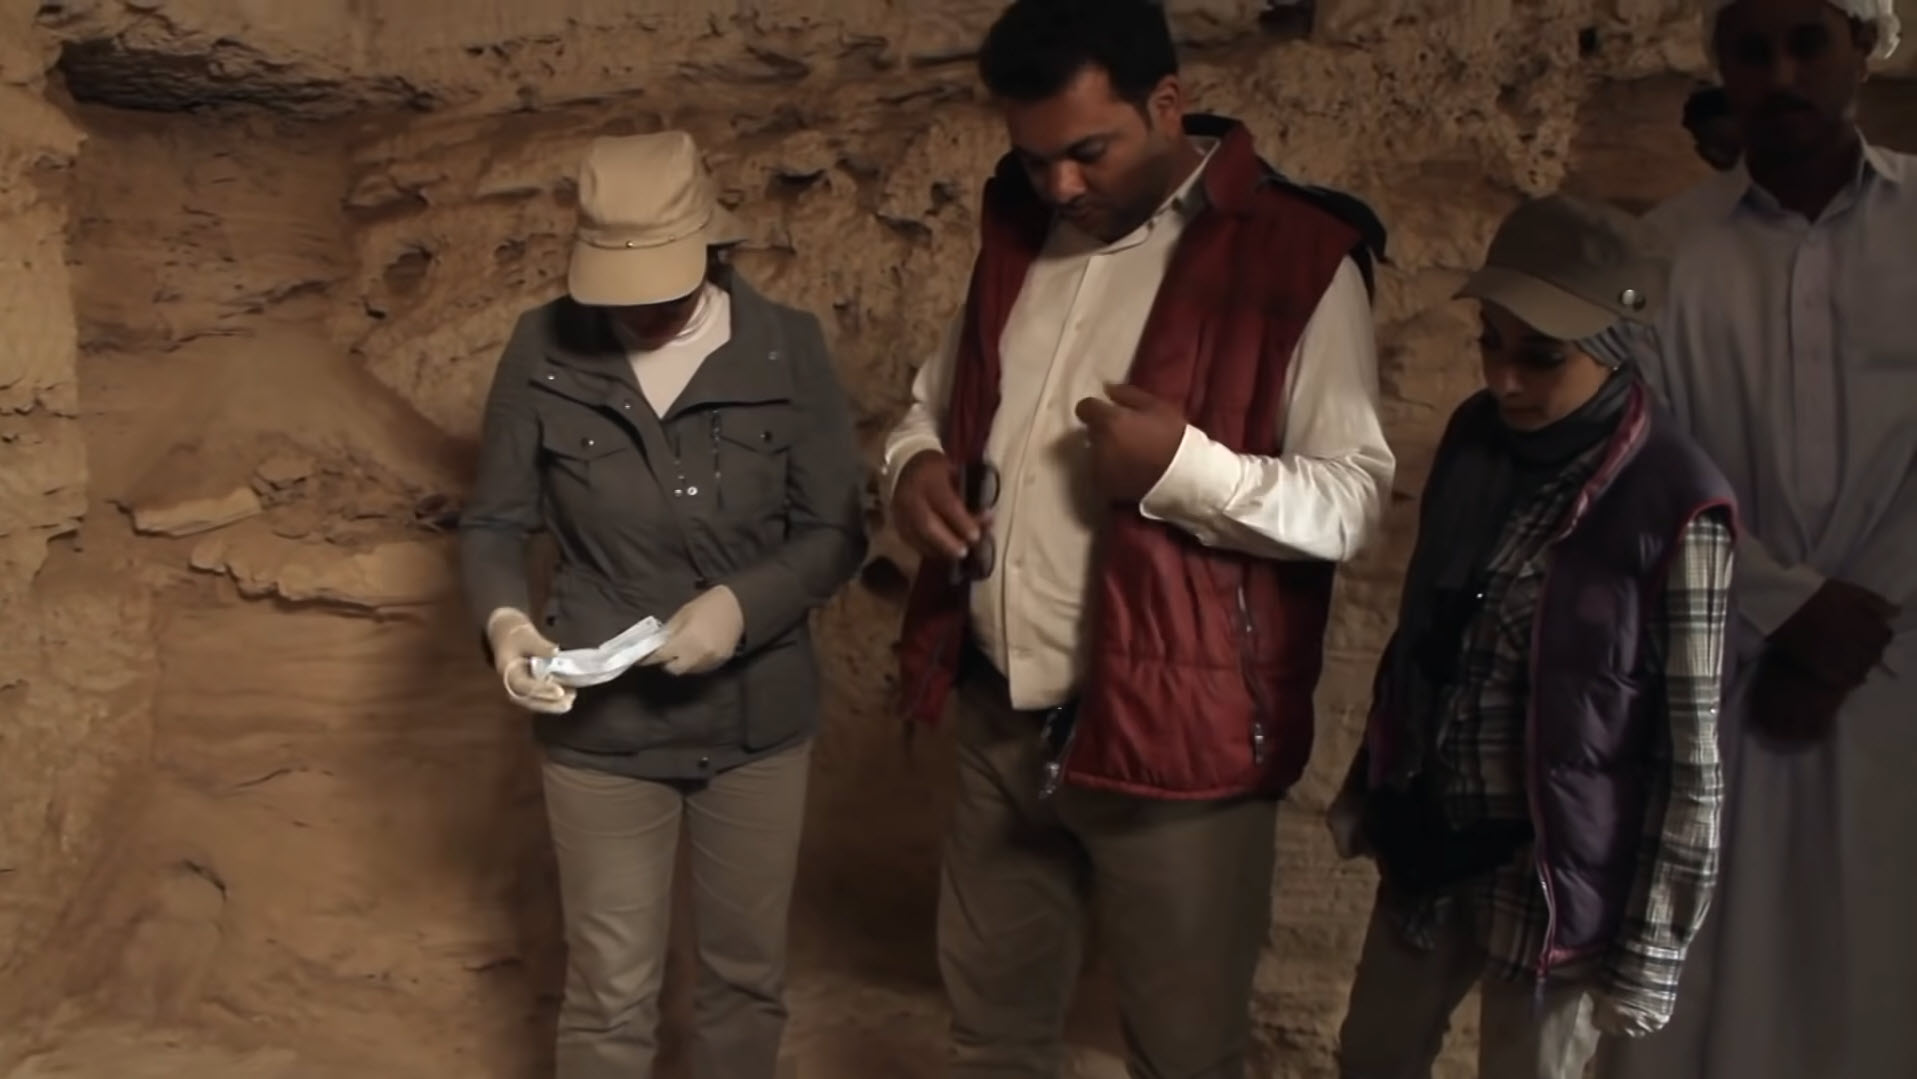 Ανακαλύφθηκε σήραγγα που μπορεί να οδηγεί στον τάφο της Κλεοπάτρας